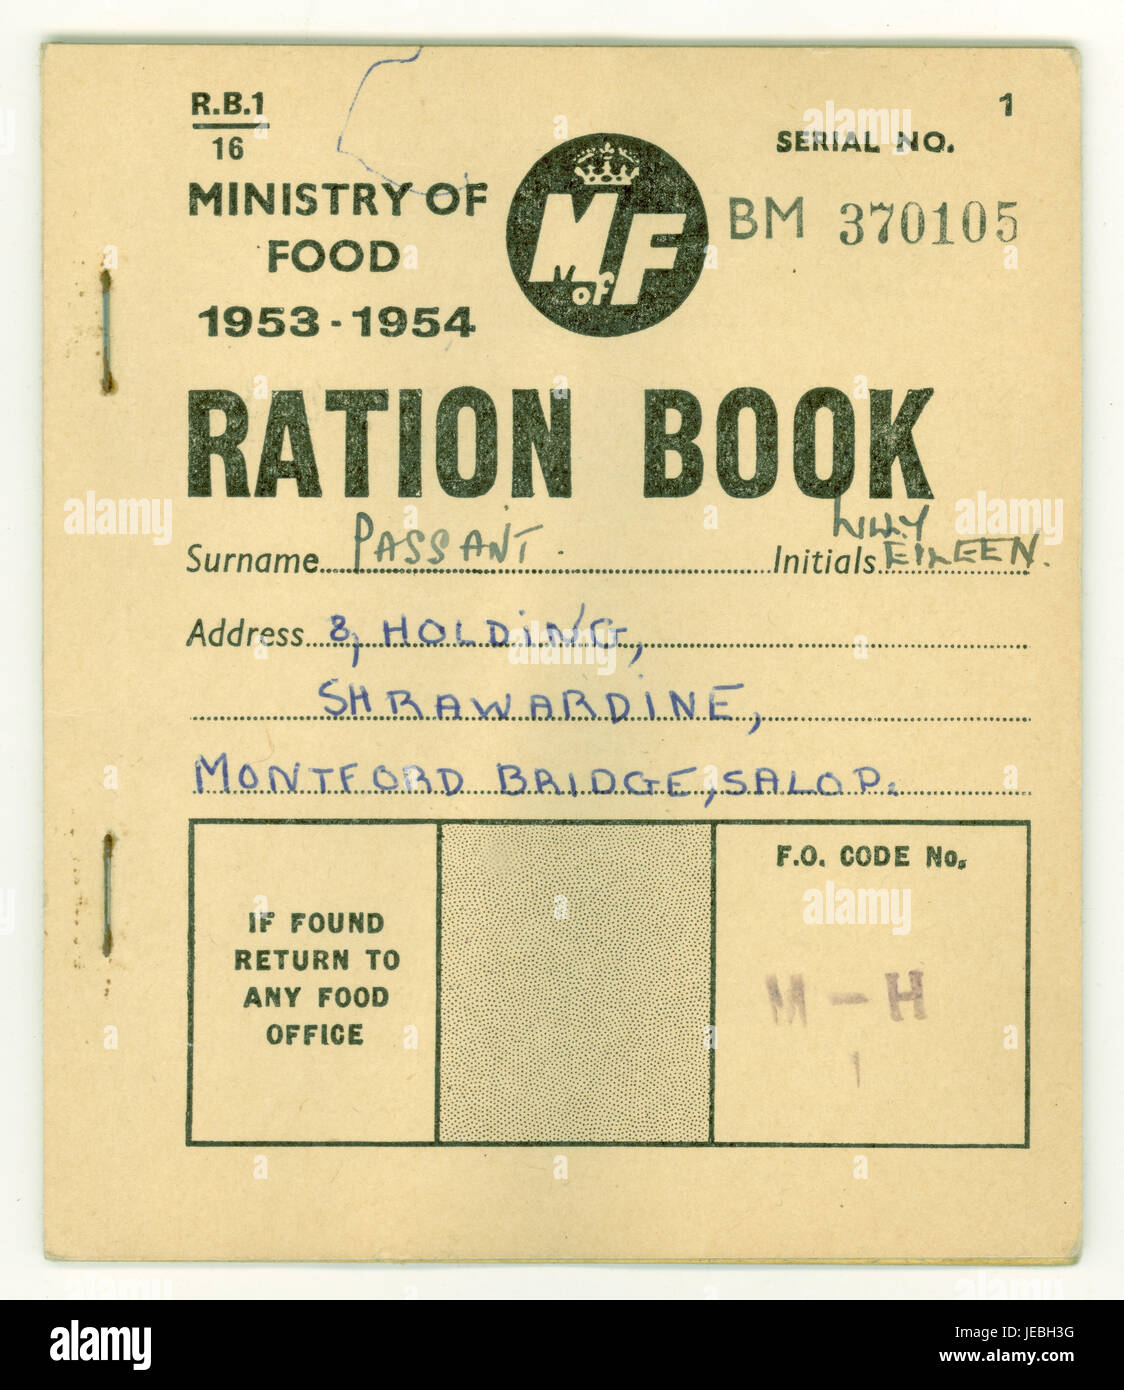 Ministry of Food 1953-1954 Ration Book, Coupons Inside, eine Einschränkung, die die britische Bevölkerung Ernährung, für einen Bewohner von Montford Bridge, Salop, (alte Abkürzung für Shropshire), England, Großbritannien Stockfoto